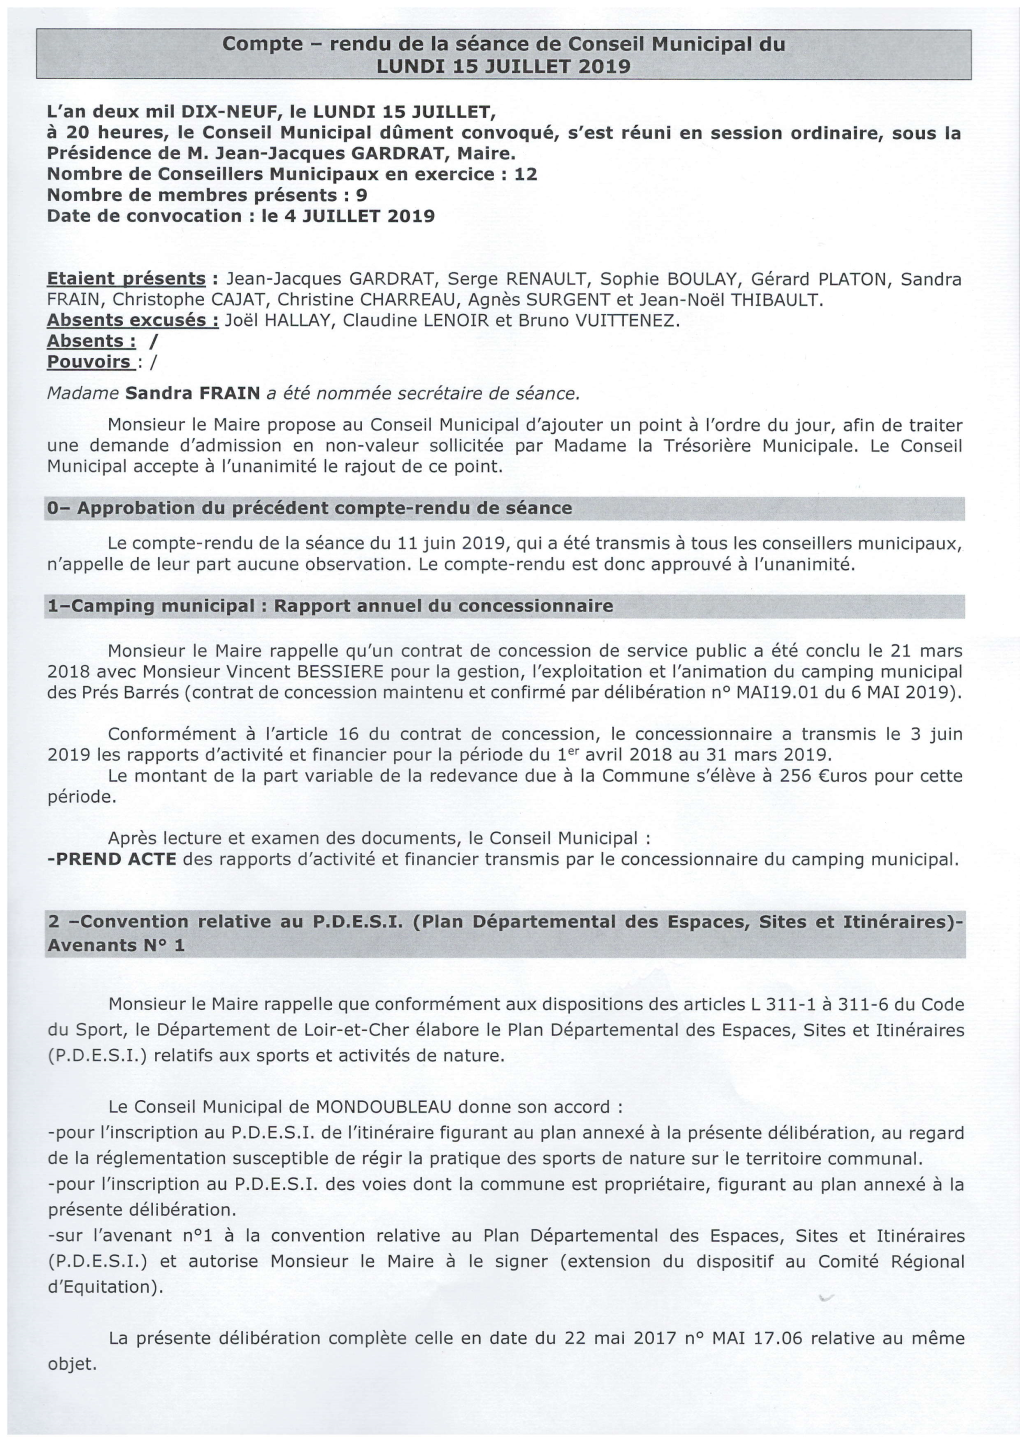 Compte Rendu De La Réunion De Conseil Municipal Du 15 Juillet 2019